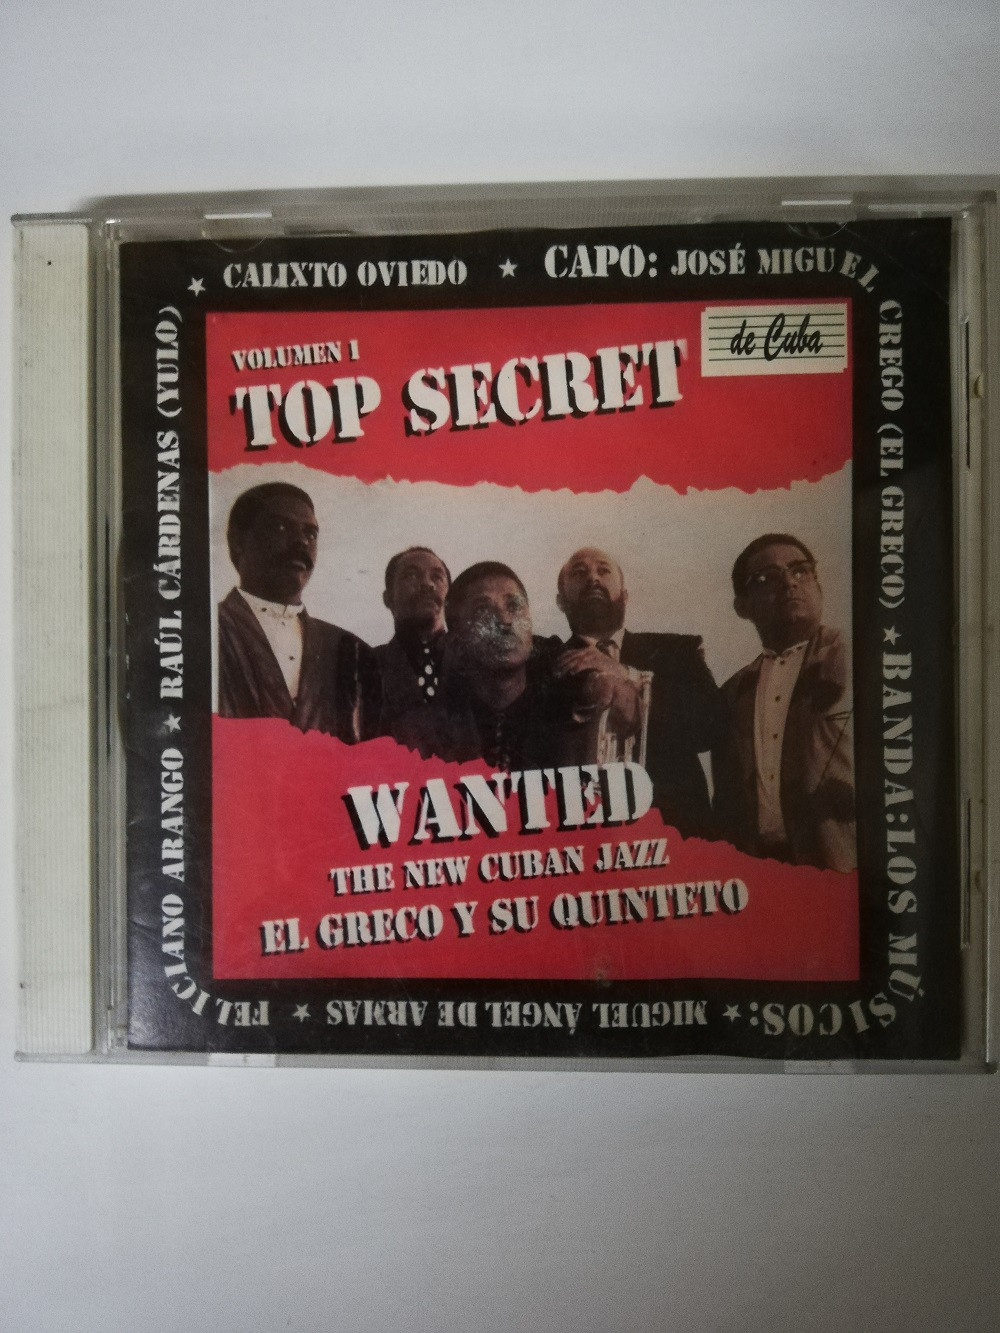 Imagen CD THE NEW YORK CUBAN JAZZ EL GRECO Y SU QUINTETO - TOP SECRET VOL. 1